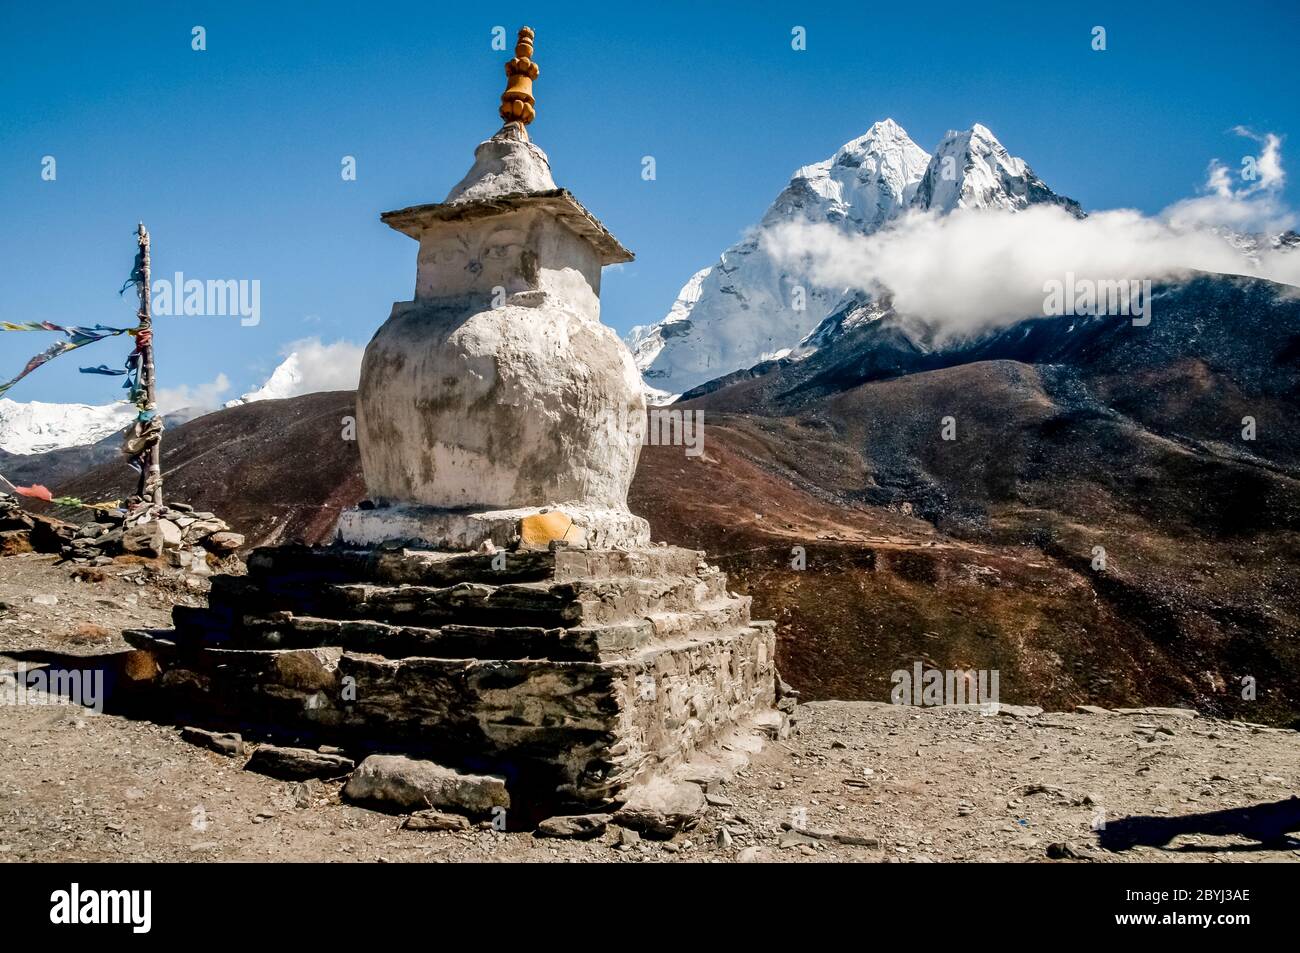 Nepal. Island Peak Trek. Buddhistischer Chorgebet Stupa mit Mani Gebetssteinen, die von oberhalb des Dorfes Dingboche in Richtung Ama Dablam schauen Stockfoto